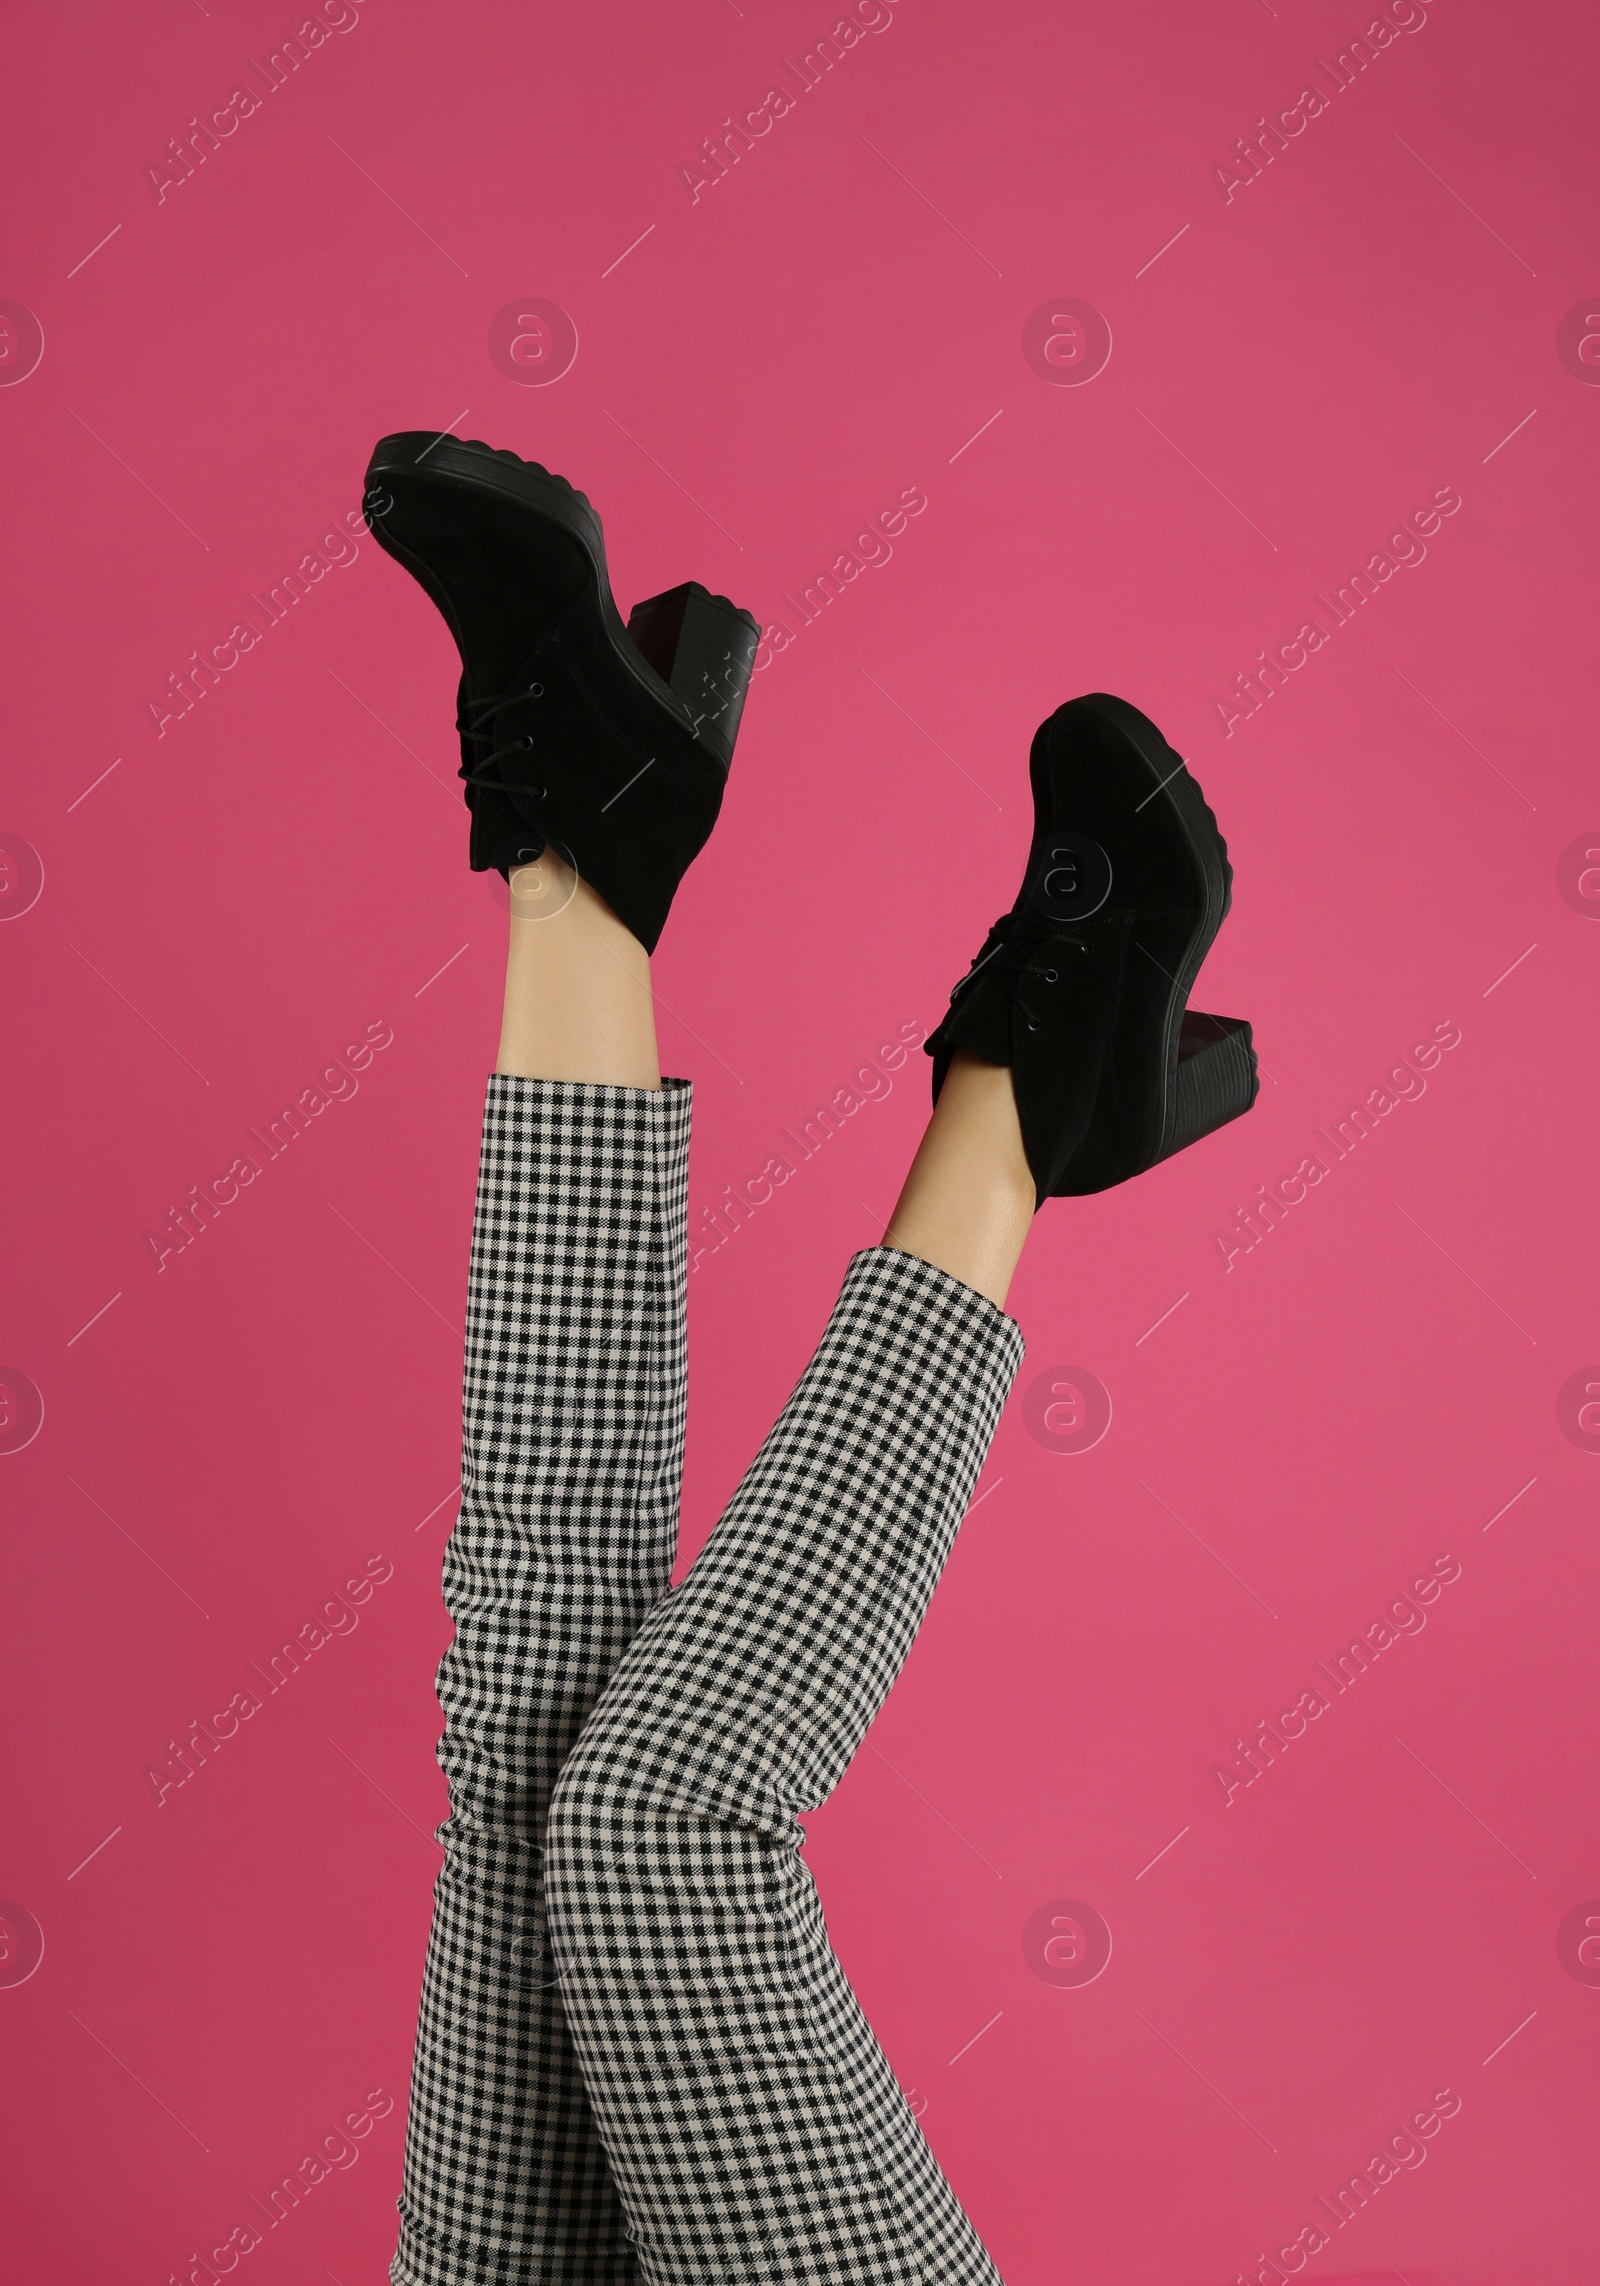 Photo of Woman wearing stylish boots on pink background, closeup